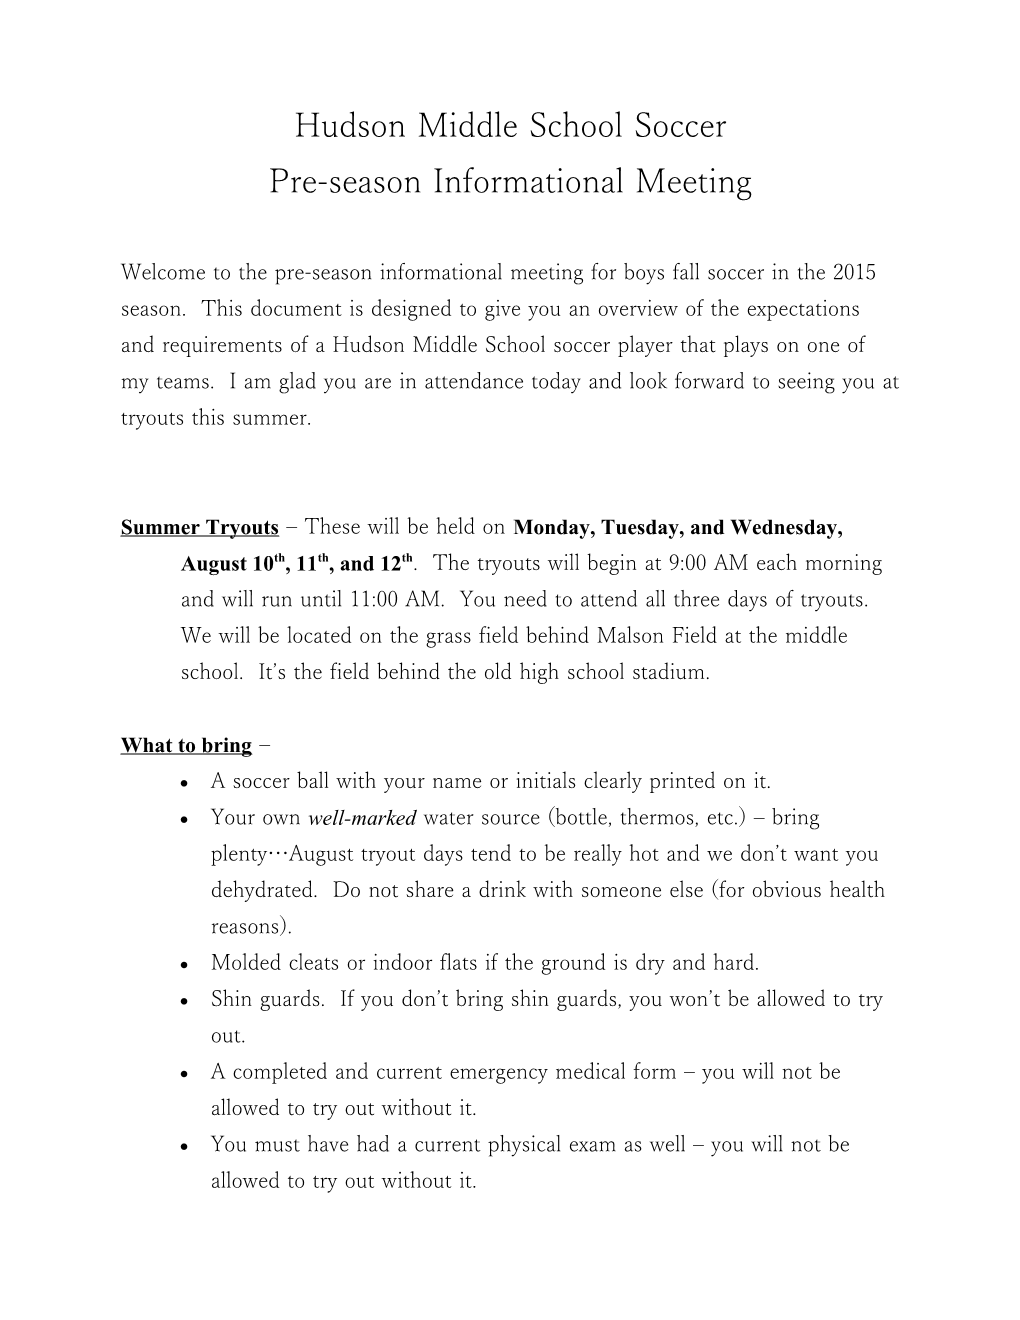 Pre-Season Informational Meeting